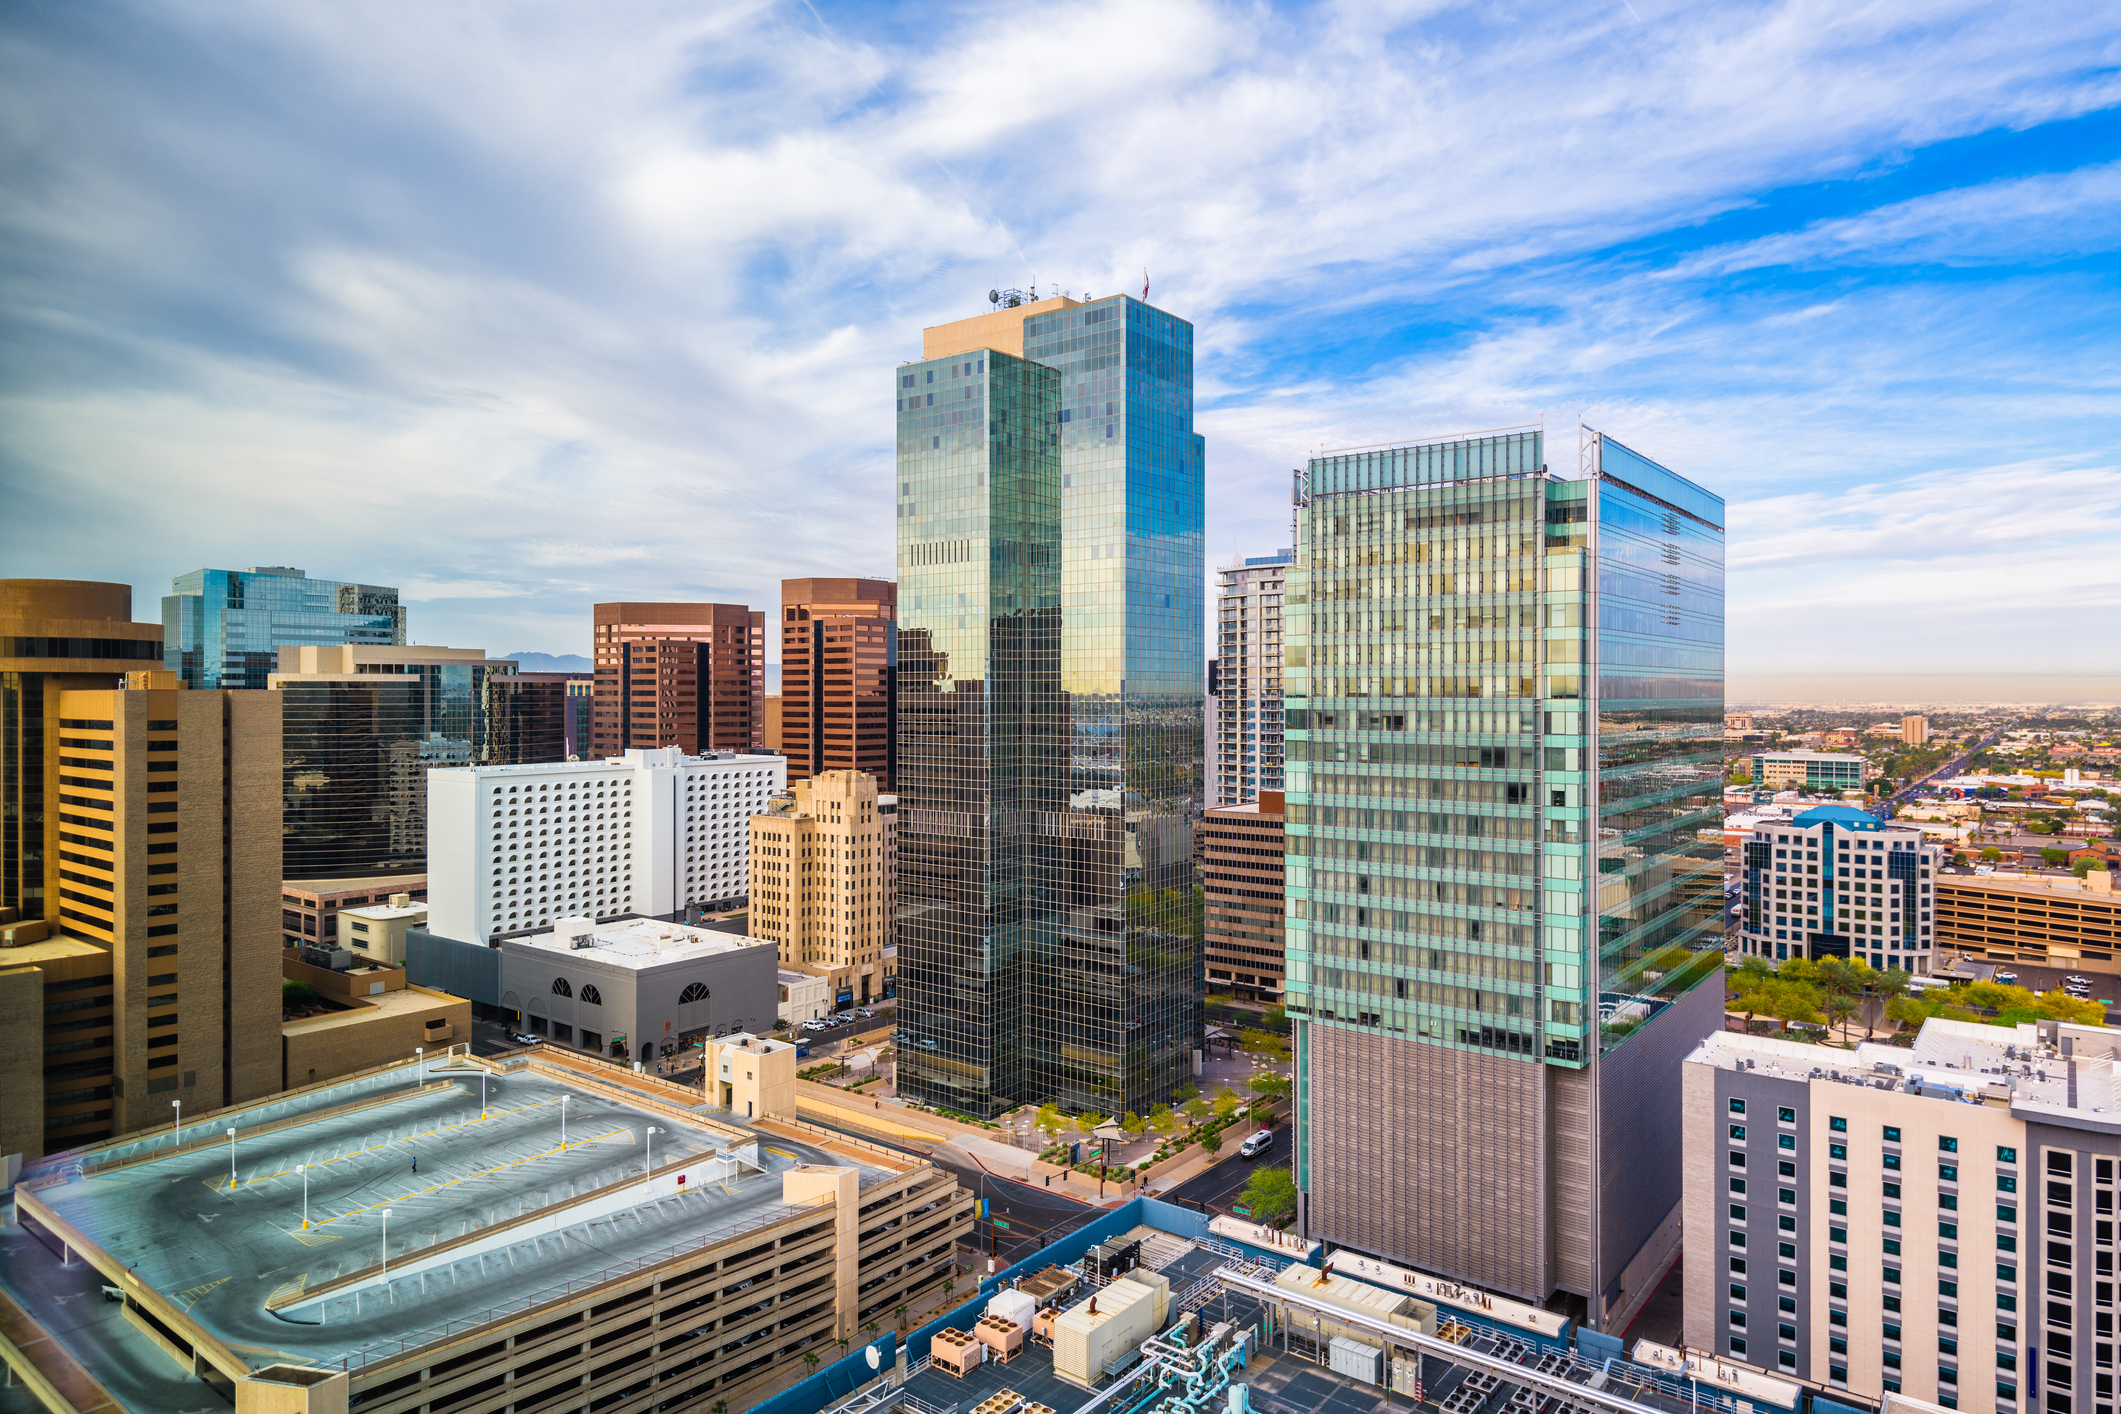 Phoenix, Arizona, USA cityscape